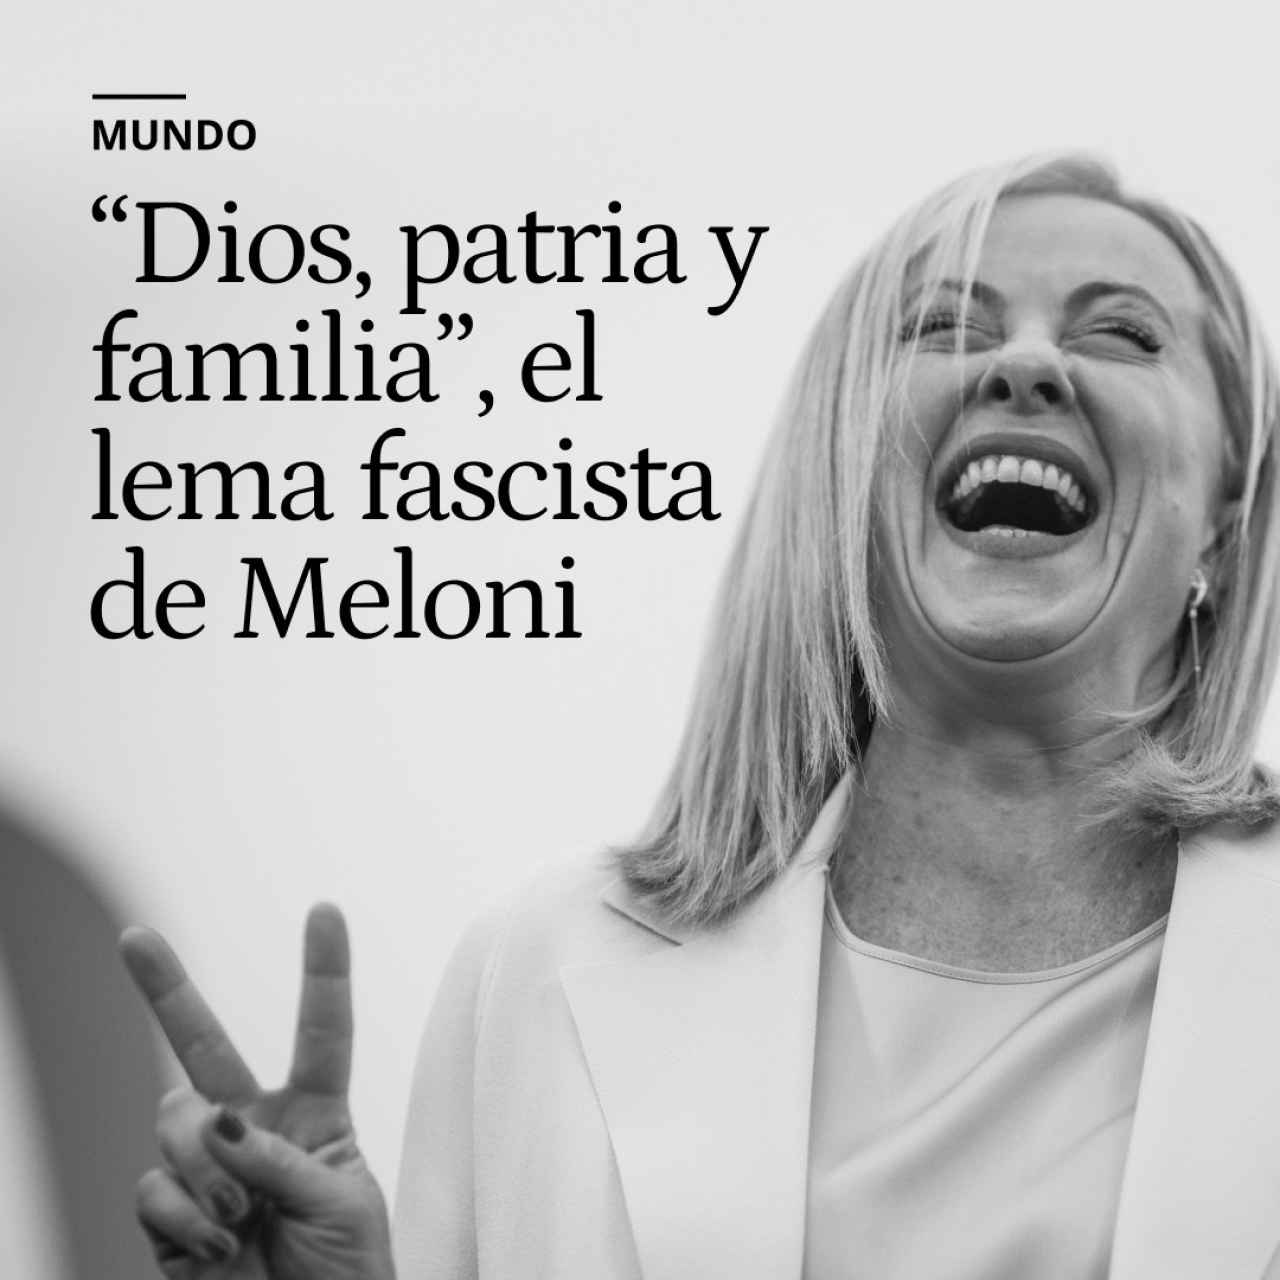 “Dios, patria y familia”, el lema fascista con el que Giorgia Meloni gobernará Italia